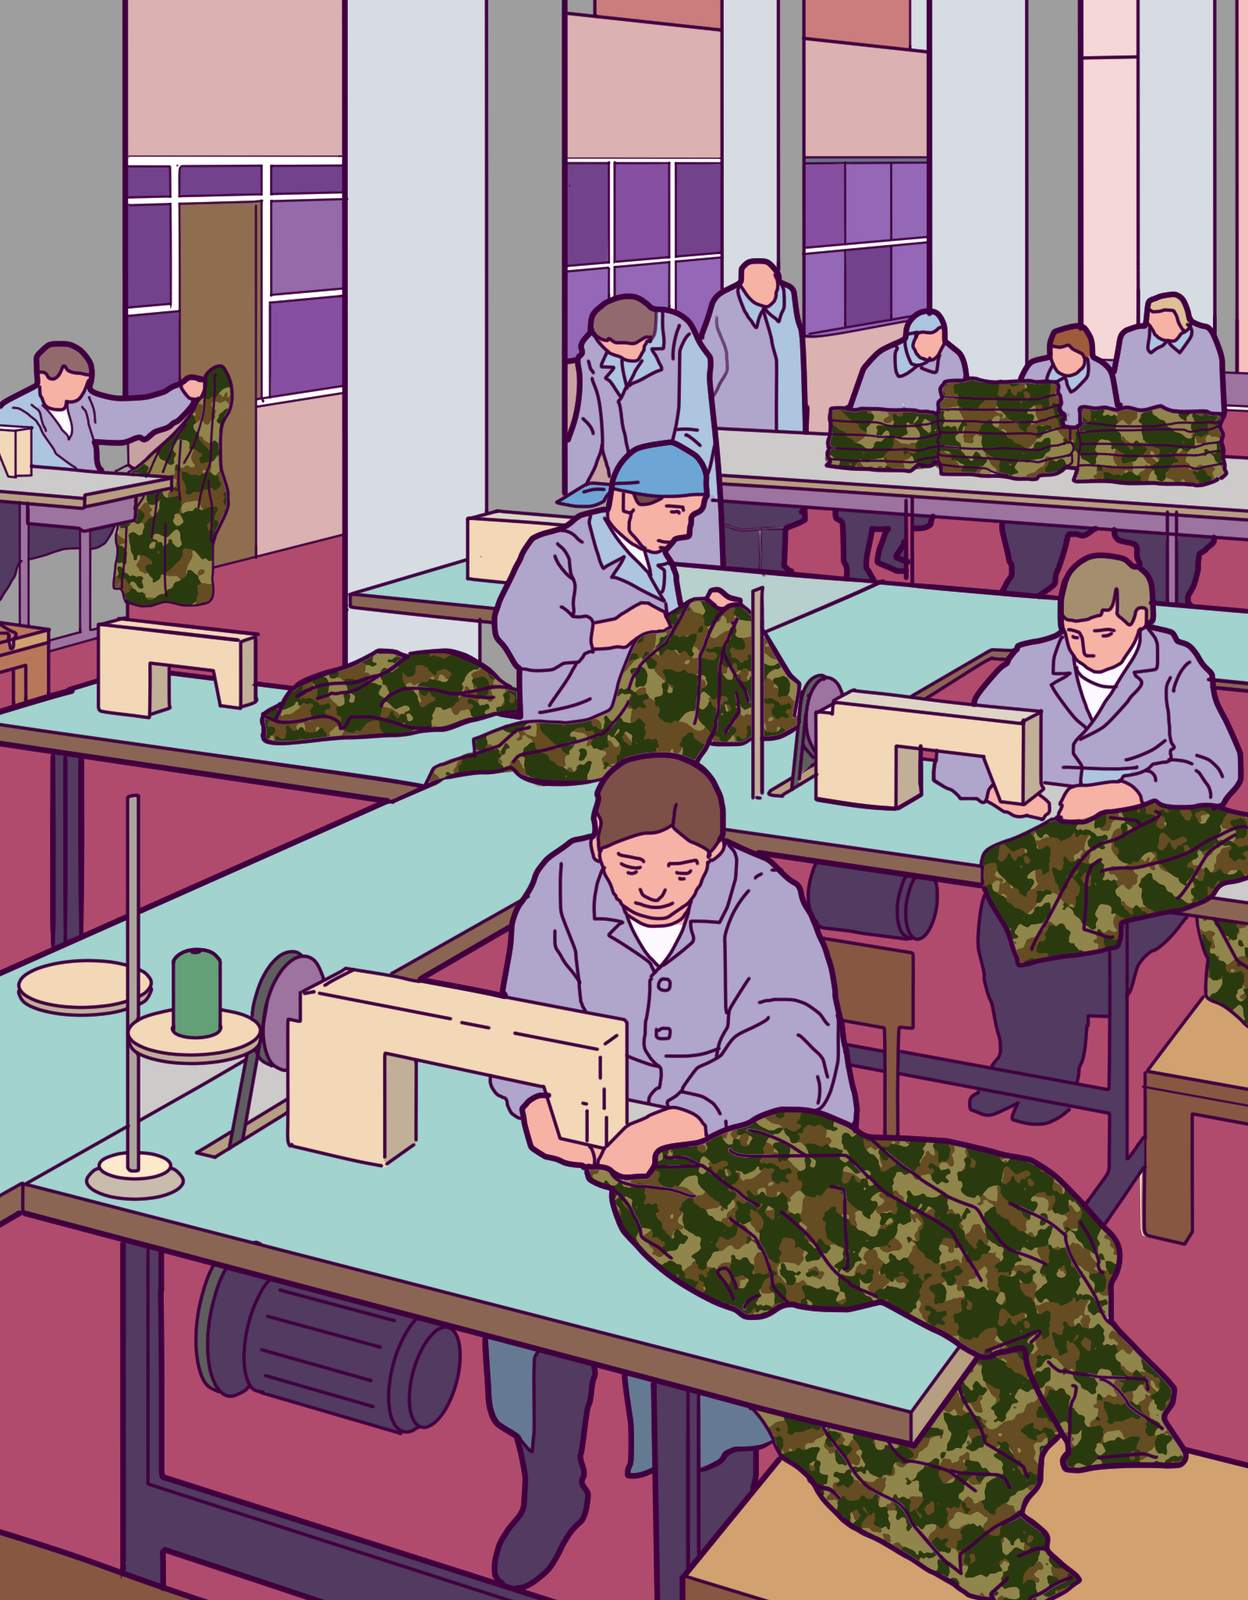 Kolorowa ilustracja przedstawia wnętrze zakładu produkcyjnego. W hali produkcyjnej ustawione są maszyny do szycia. Przy każdym stole z maszyną do szycia kobieta szyje mundury wojskowe. W głębi hali stół. Na stole ułożone w stos mundury.